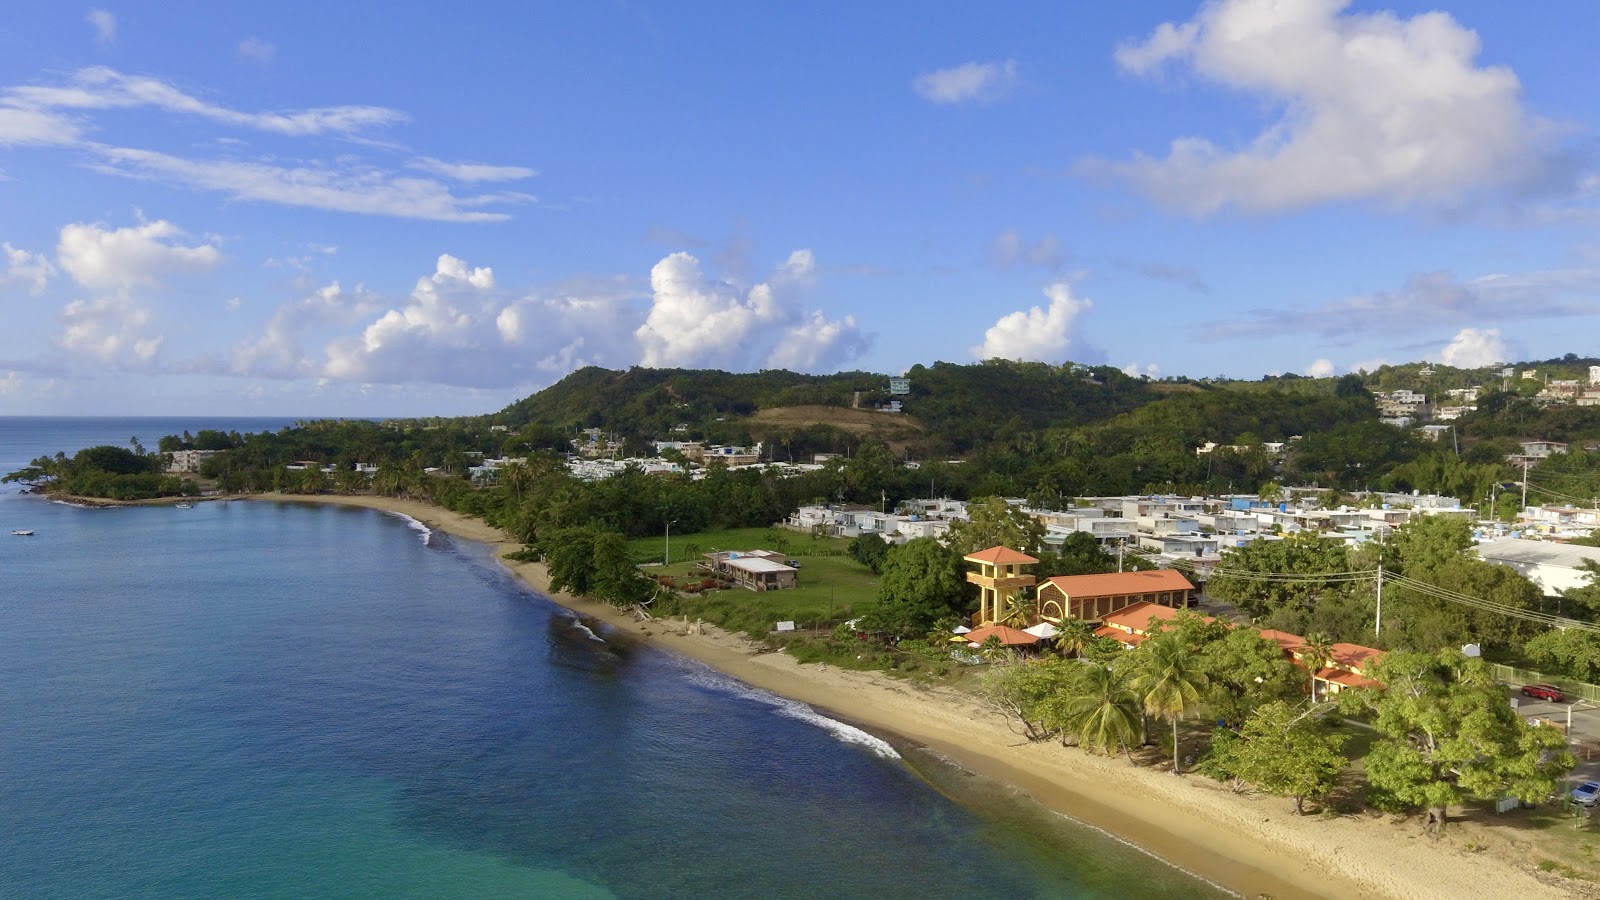 Zdjęcie Playa Dona Lala Beach - popularne miejsce wśród znawców relaksu